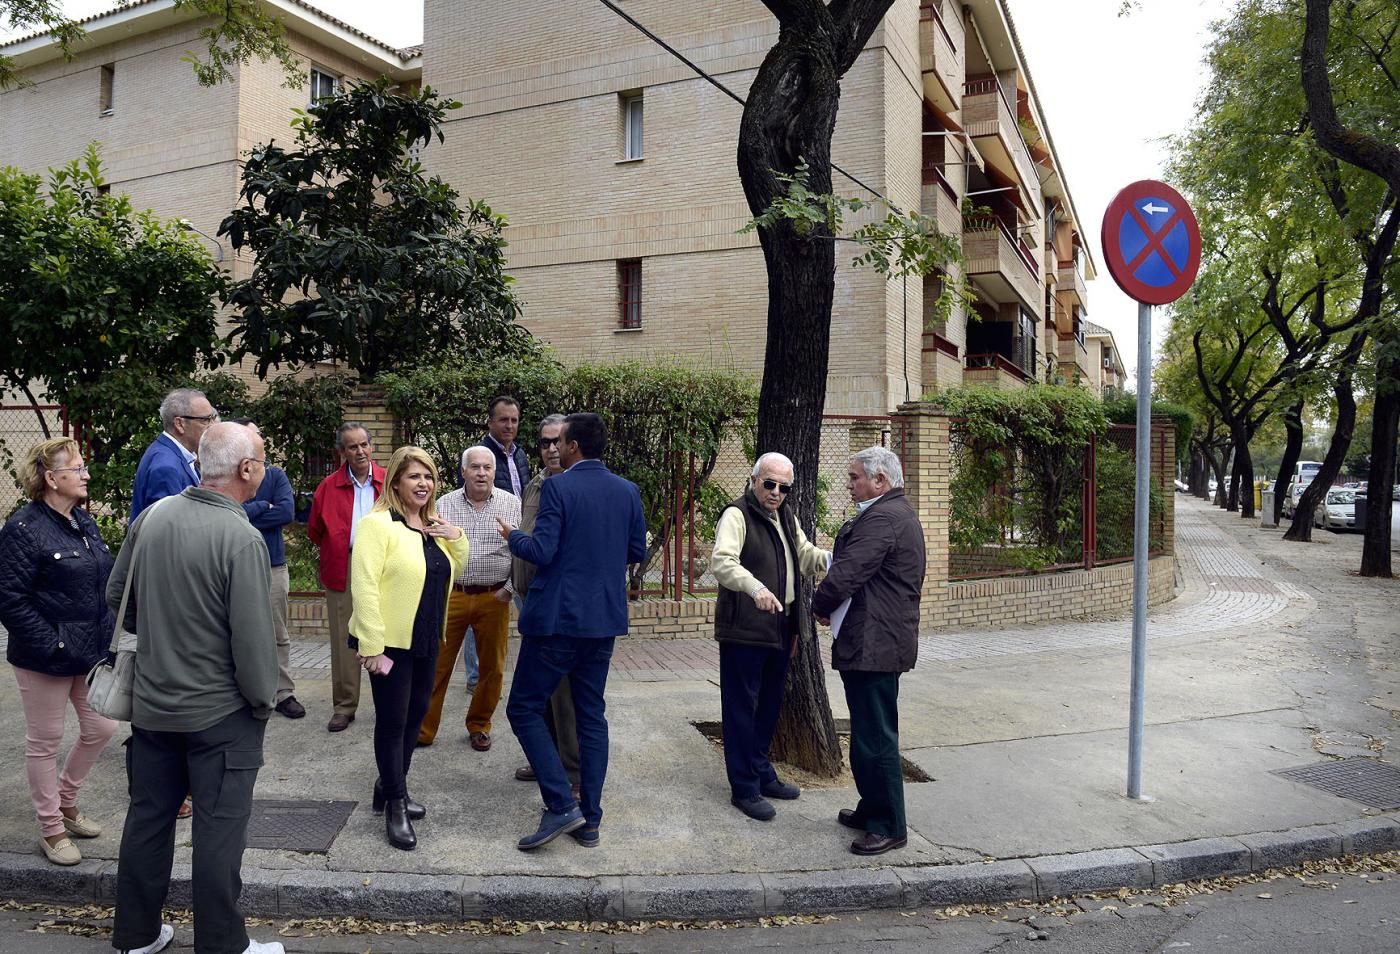 La alcaldesa durante su visita a la avenida Cruz Roja denunciada por el PP.